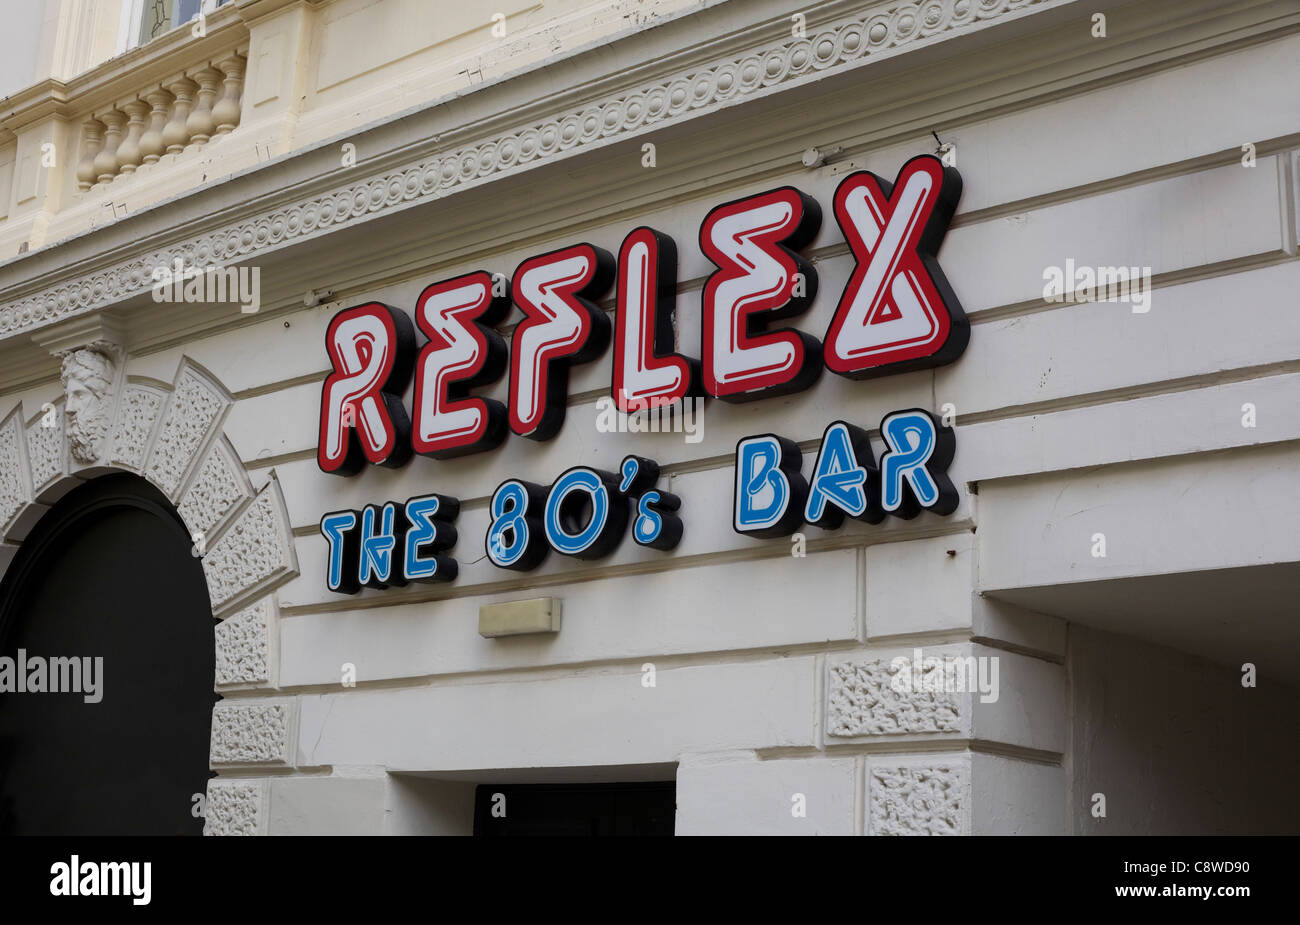 Reflex der 80er Jahre Bar in Liverpool, Nachtclub, Studenten  Stockfotografie - Alamy